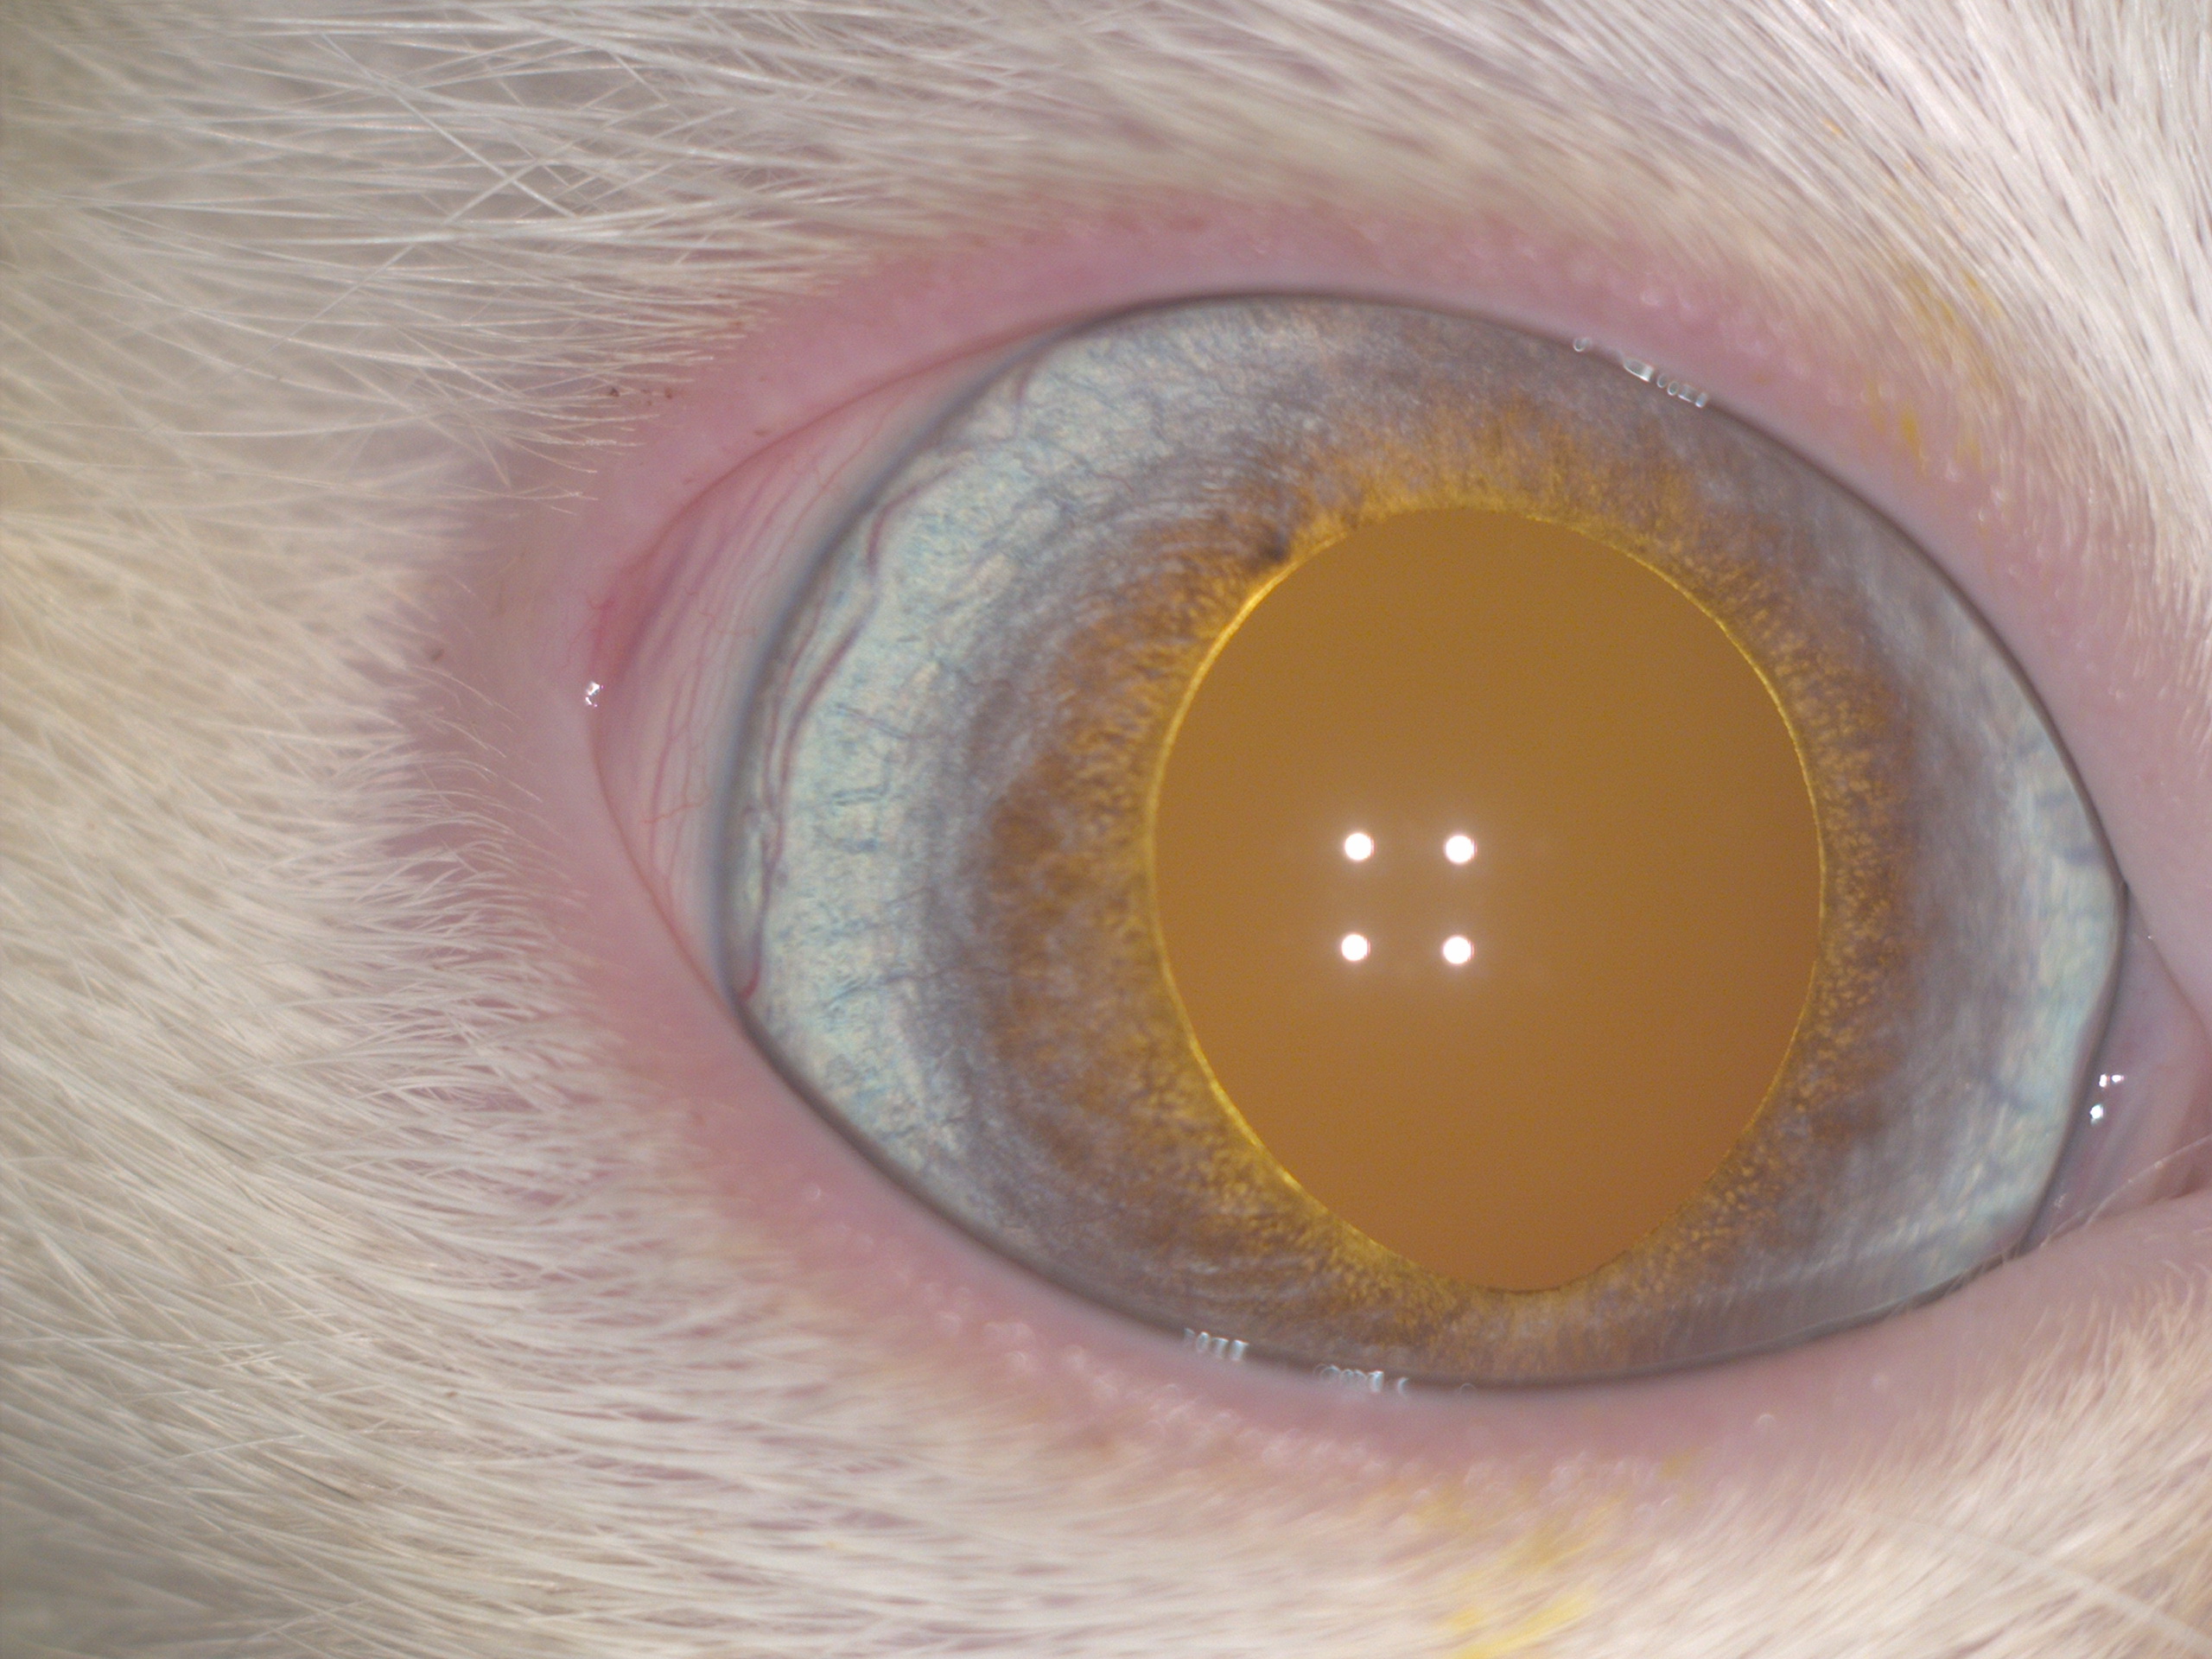 Биомикроскопия переднего отрезка правого глаза и офтальмоскопия правого глаза